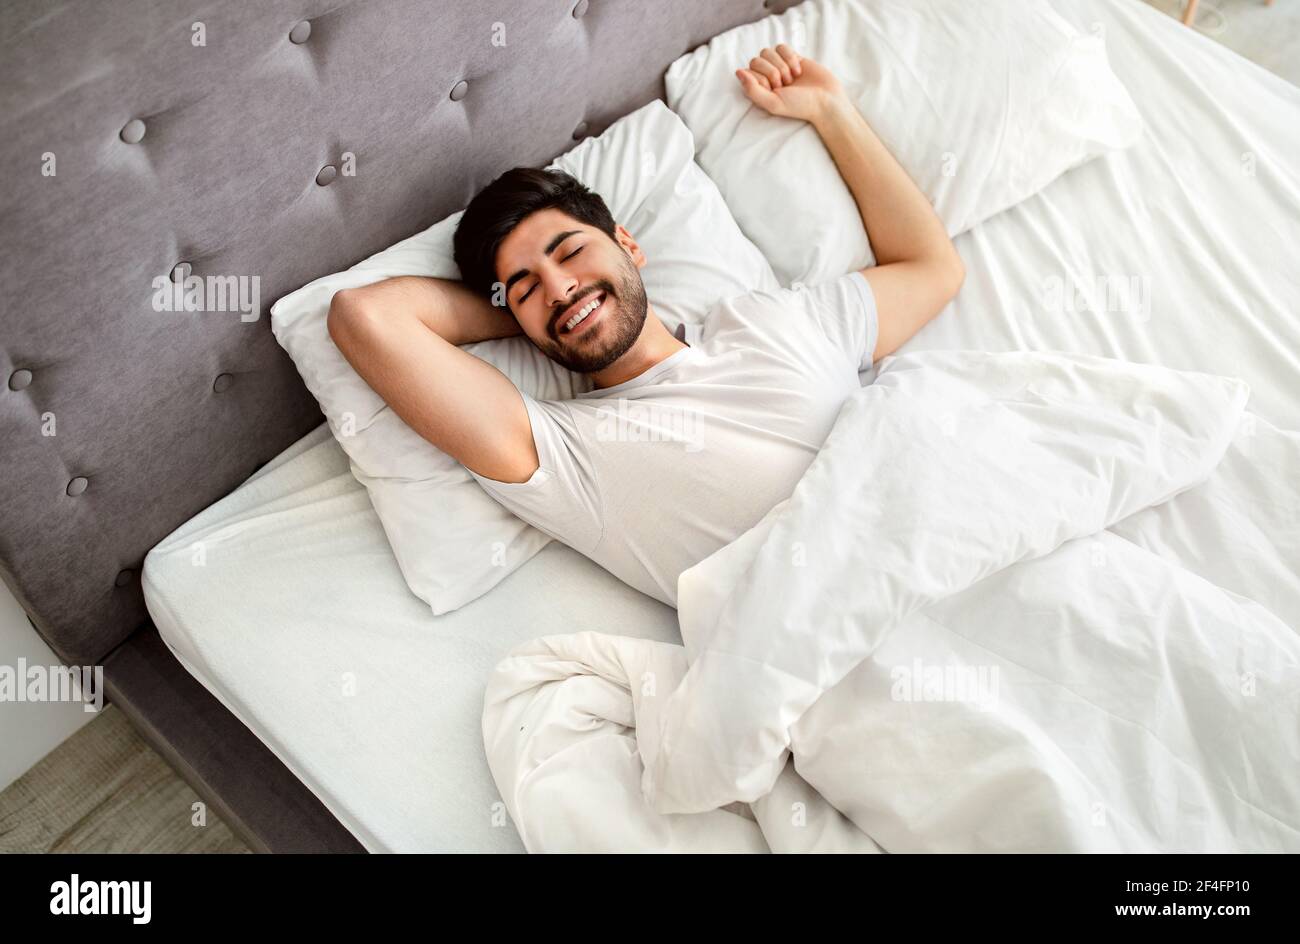 Glücklich gut geschlafen araber Aufwachen am Morgen, Erwachen nach gutem  Schlaf Stockfotografie - Alamy